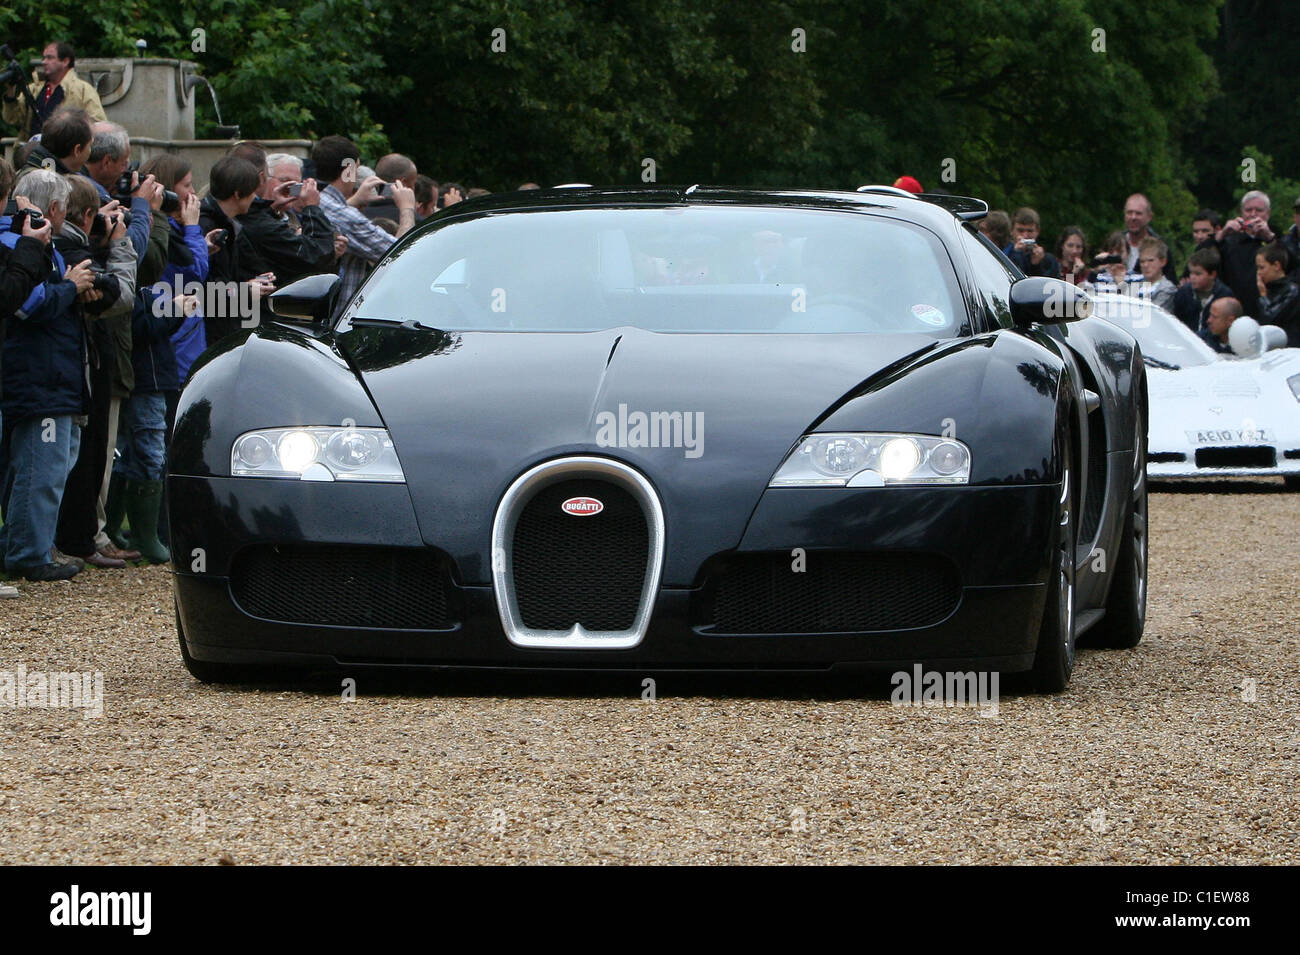 Le Bugatti Veyron EB110 16.4 Supercar fait le plaisir de la foule lors d'un salon de l'auto de Wiltshire au Royaume-Uni. Banque D'Images